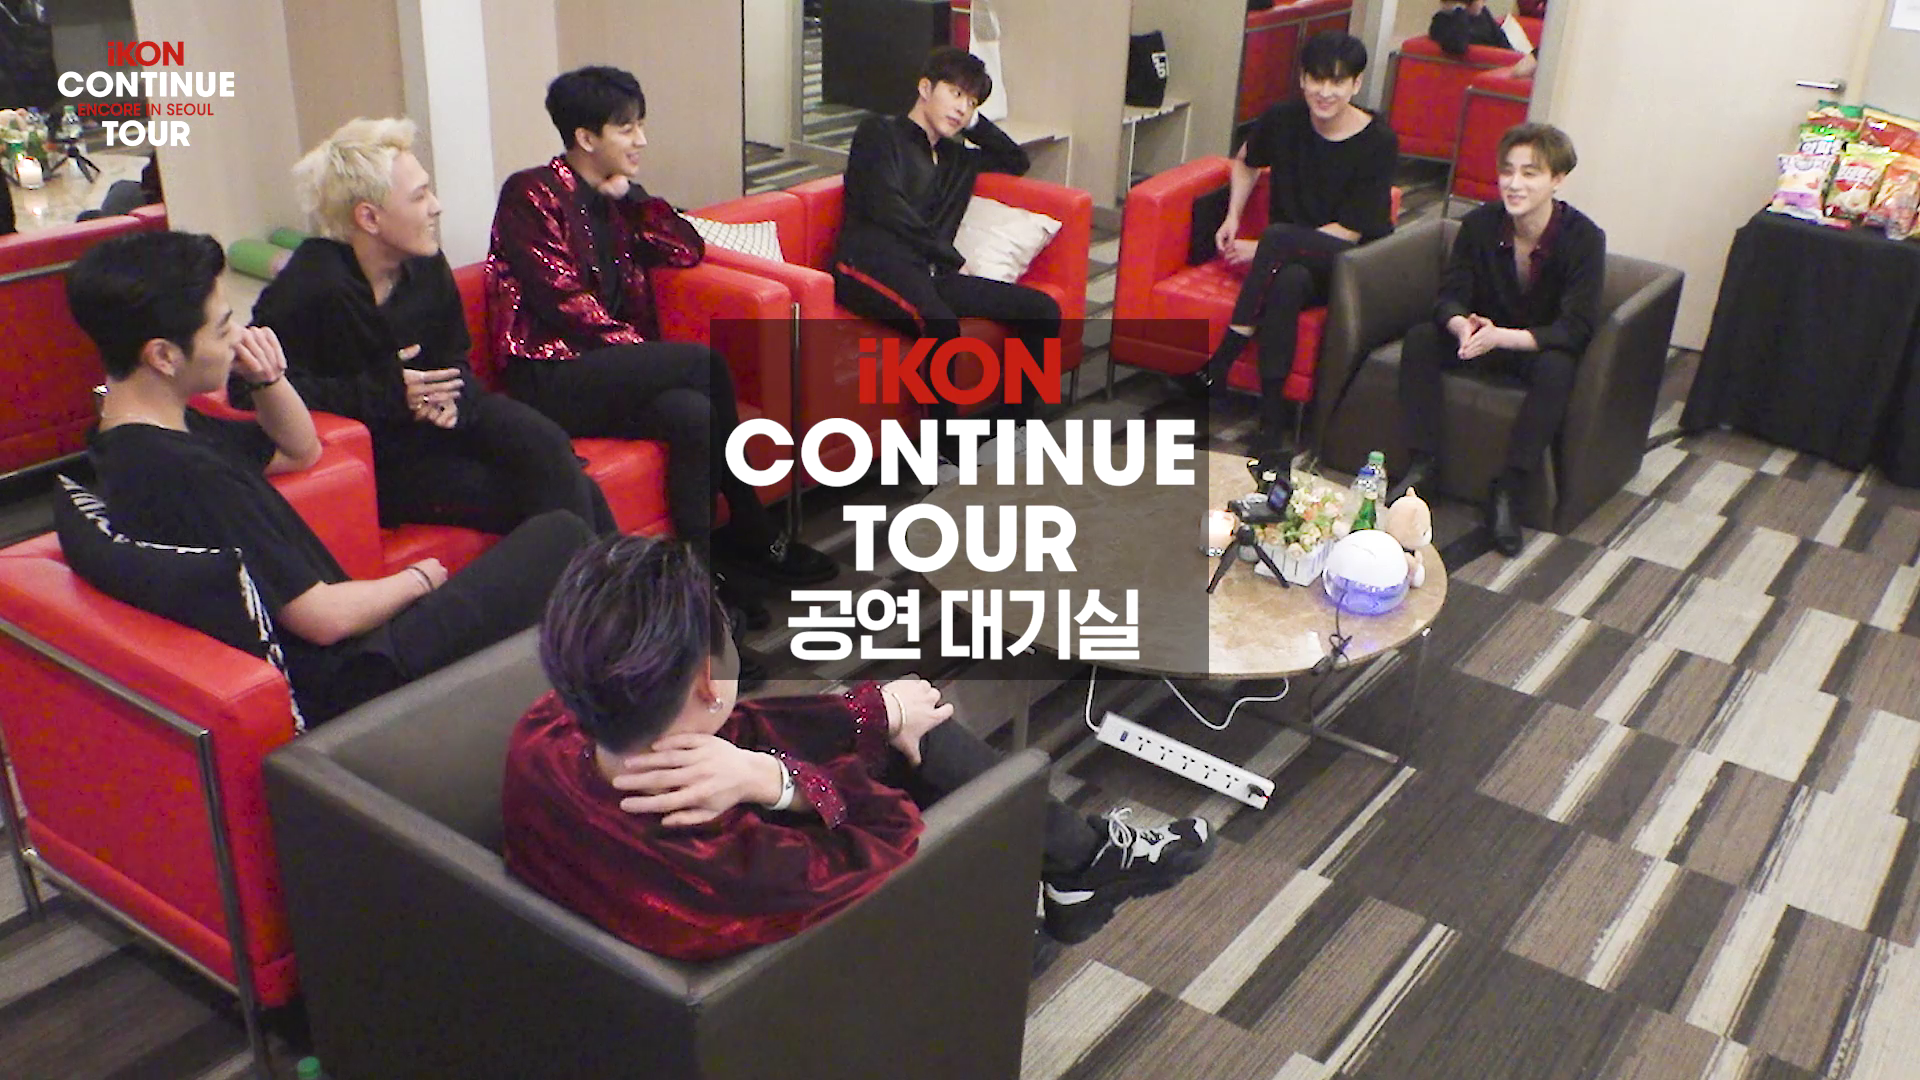 iKON - 'CONTINUE TOUR ENCORE' SPOT #2